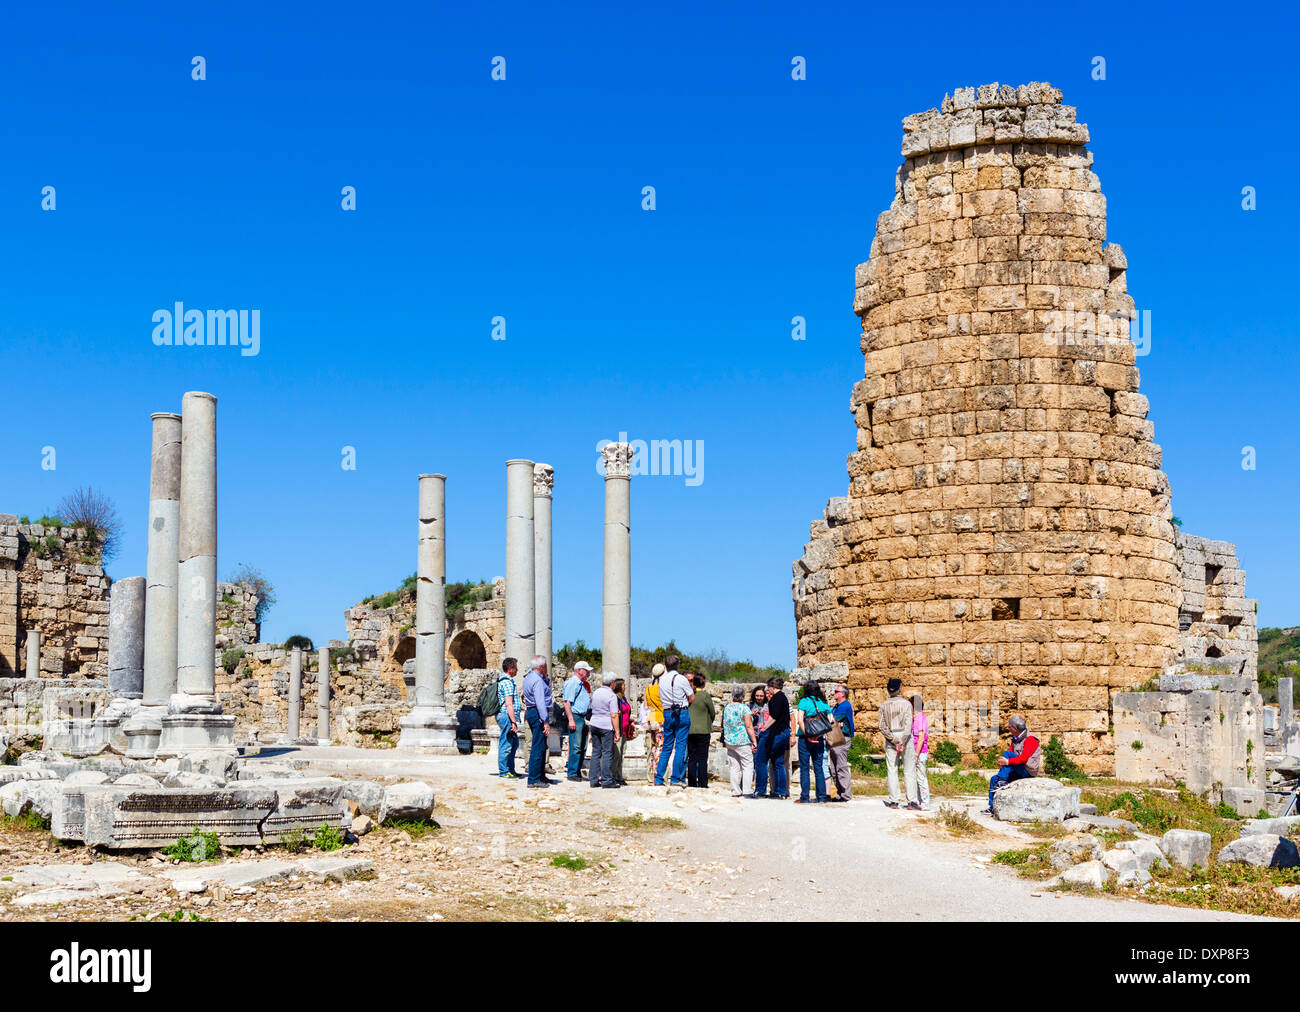 In der Nähe das hellenistische Tor in den Ruinen der antiken griechischen Stadt Perge, Pamphylien, Provinz Antalya, Türkei Stockfoto